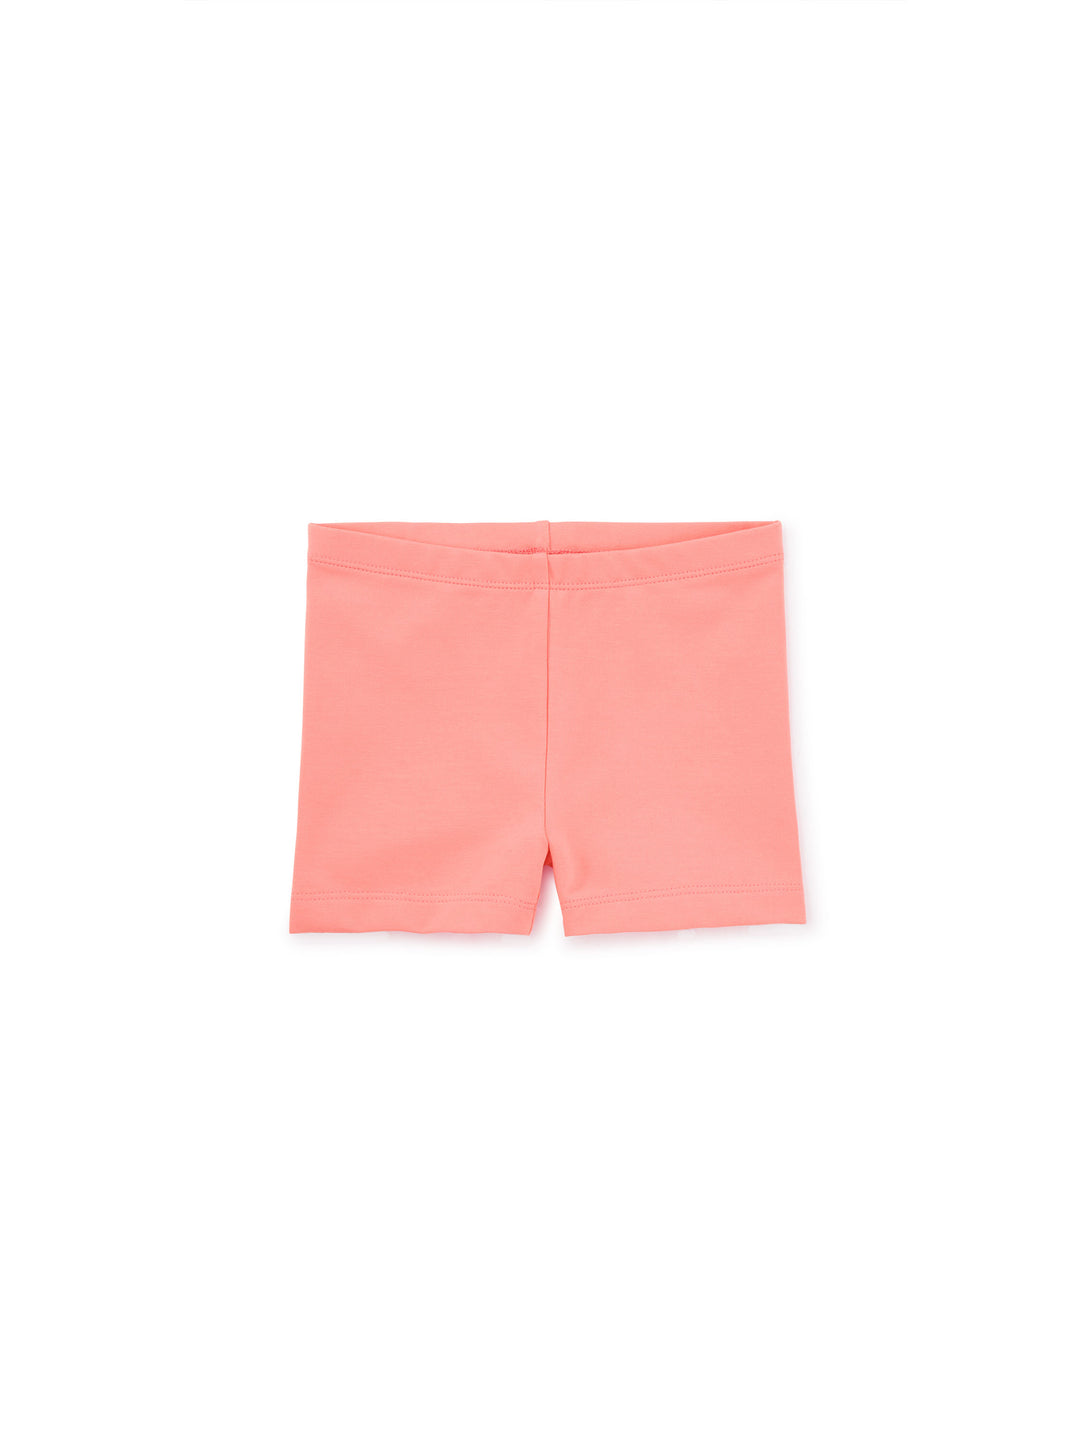 Tea Collection Somersault Shorts, Bubblegum Pink |Mockingbird Baby & Kids